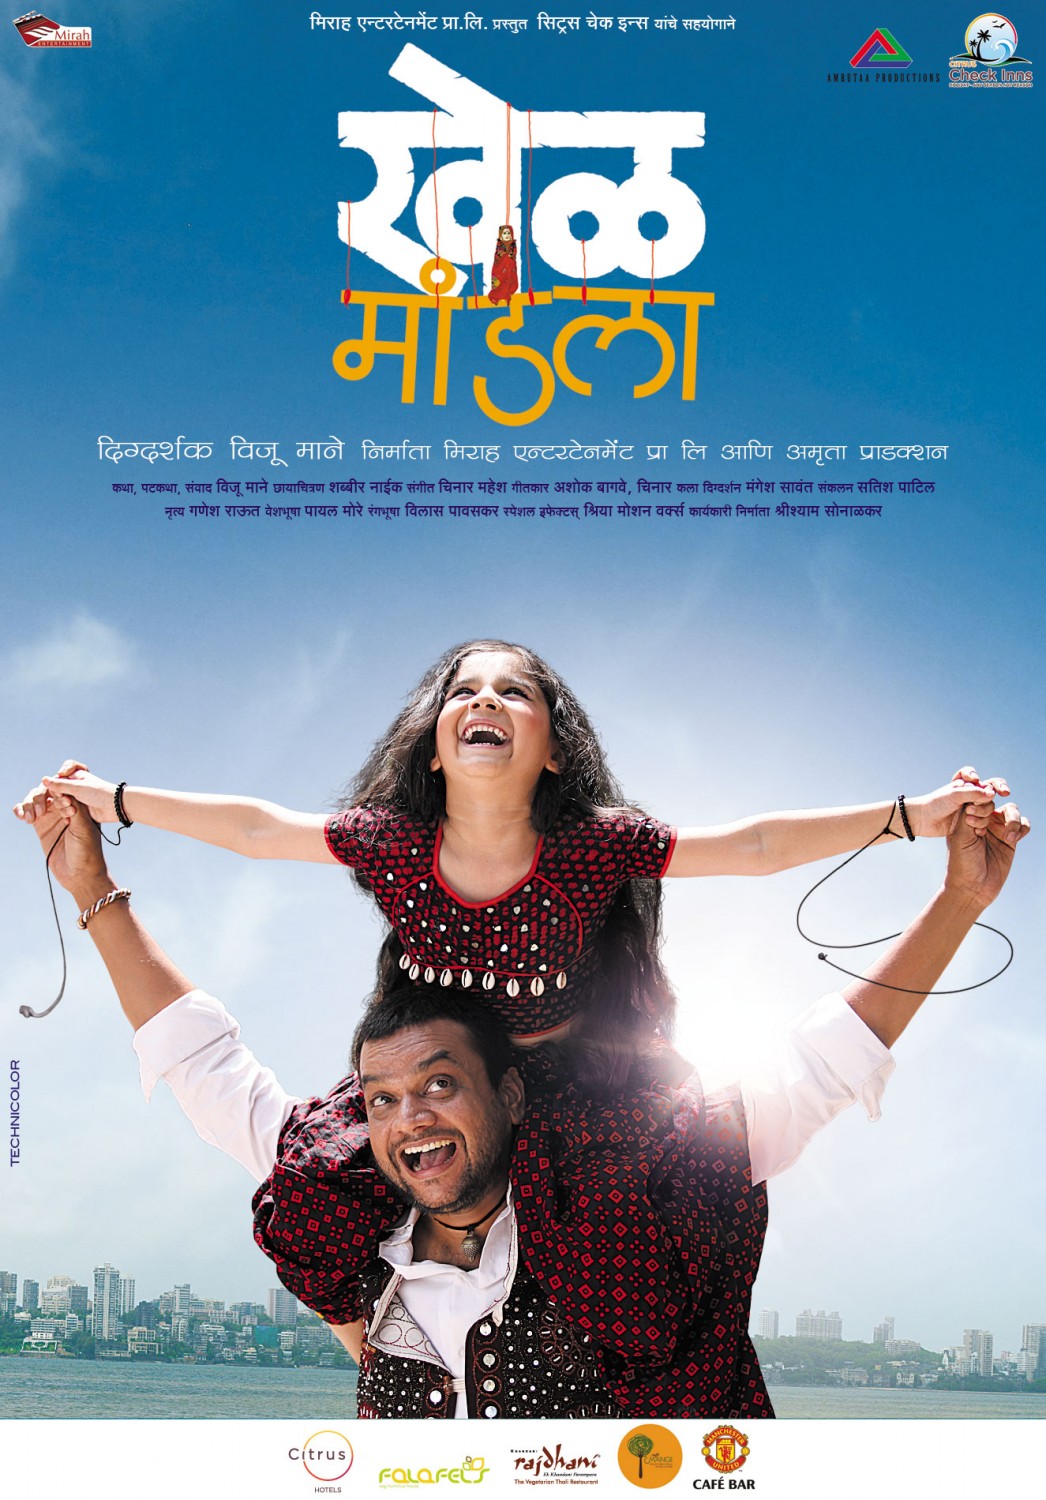 Extra Large Movie Poster Image for Khel Mandala (#8 of 13)